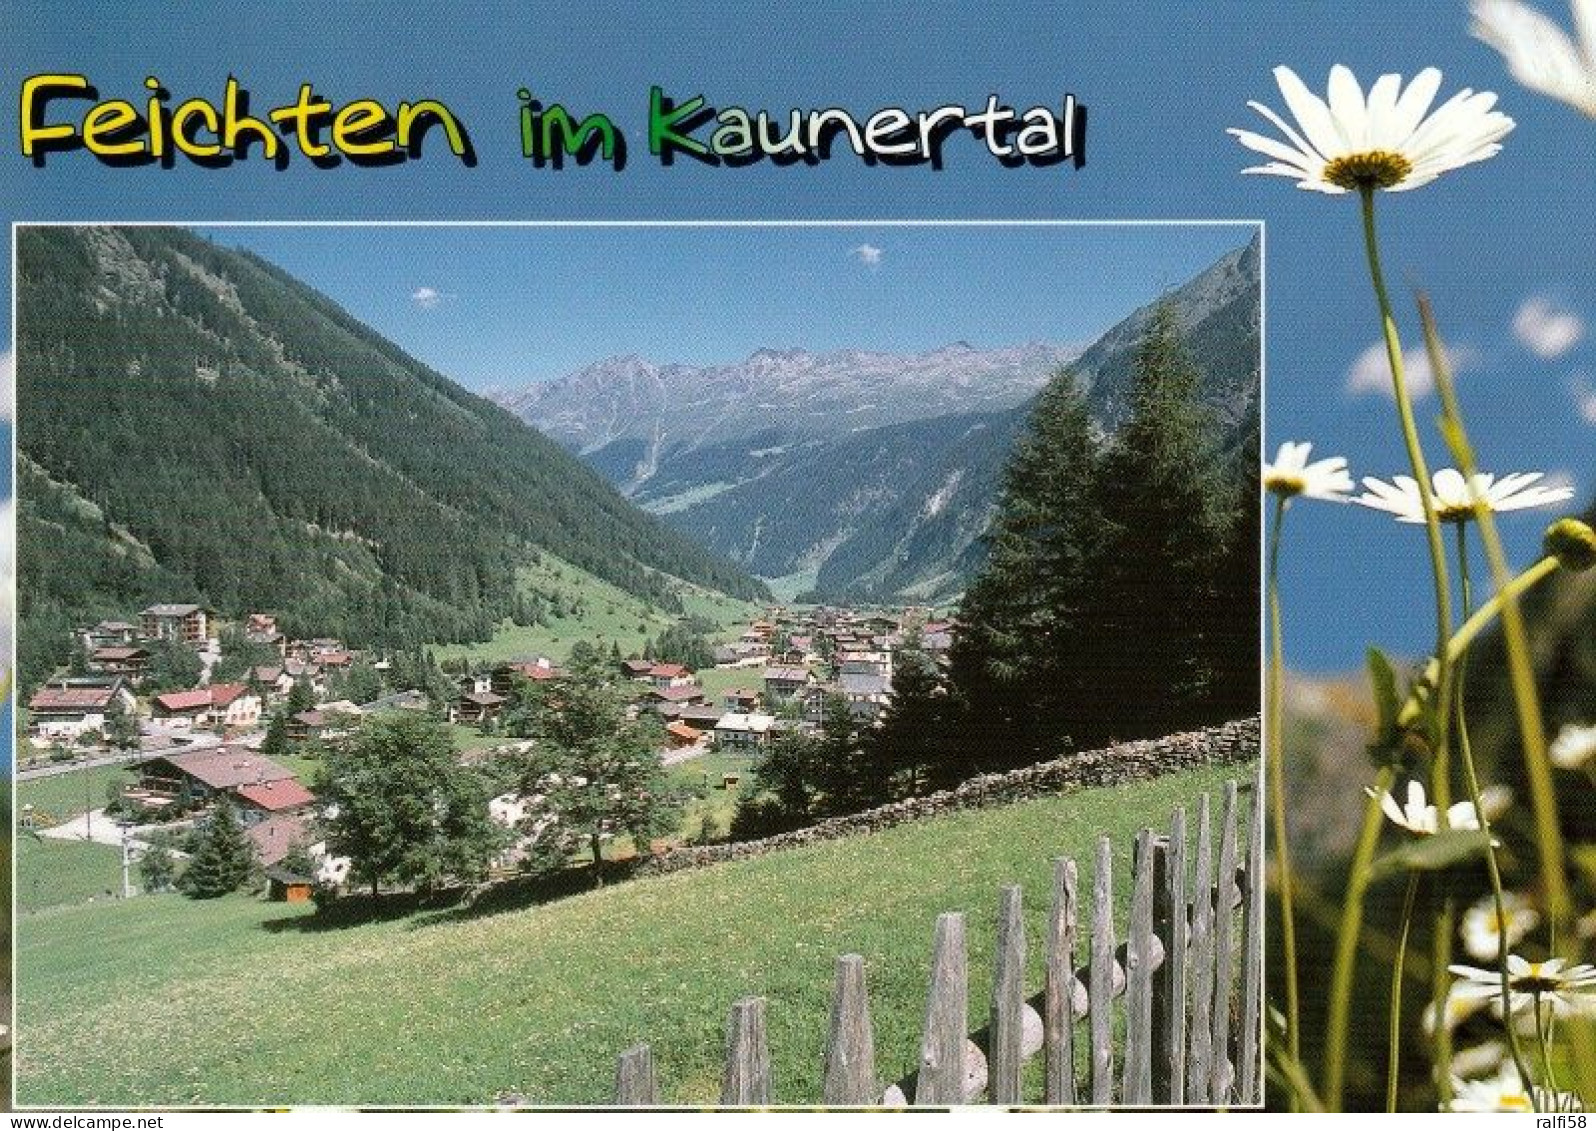 1 AK Österreich / Tirol * Blick Auf Feichten Im Kaunertal - Luftbildaufnahme * - Kaunertal